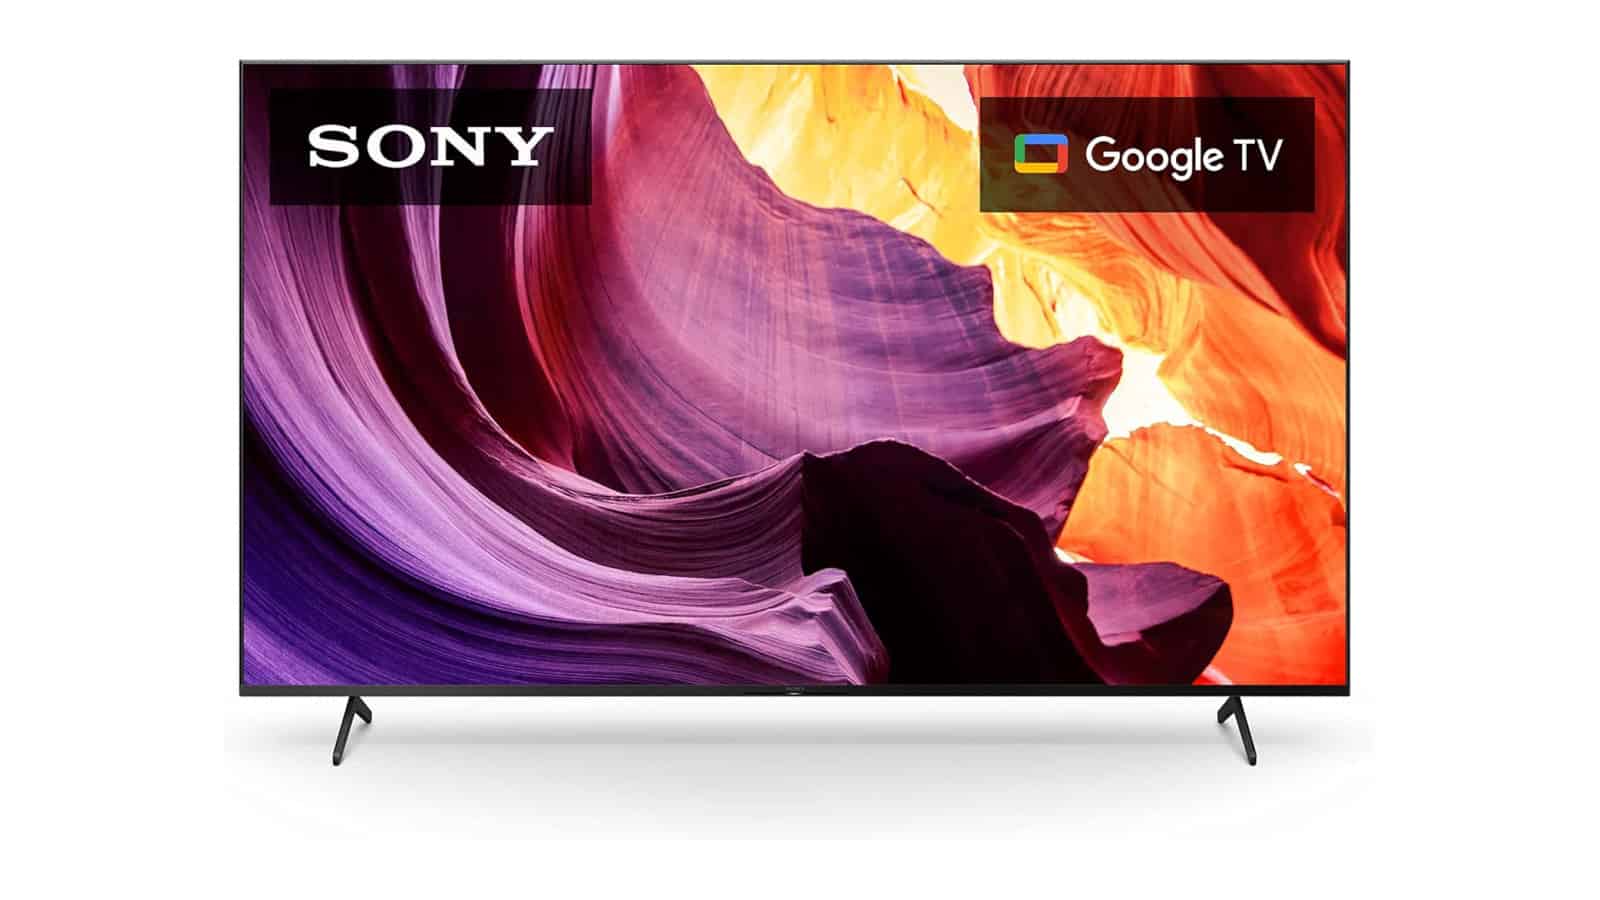 Consigue este televisor Sony 4K de 85 pulgadas digno del Super Bowl con $200 de descuento